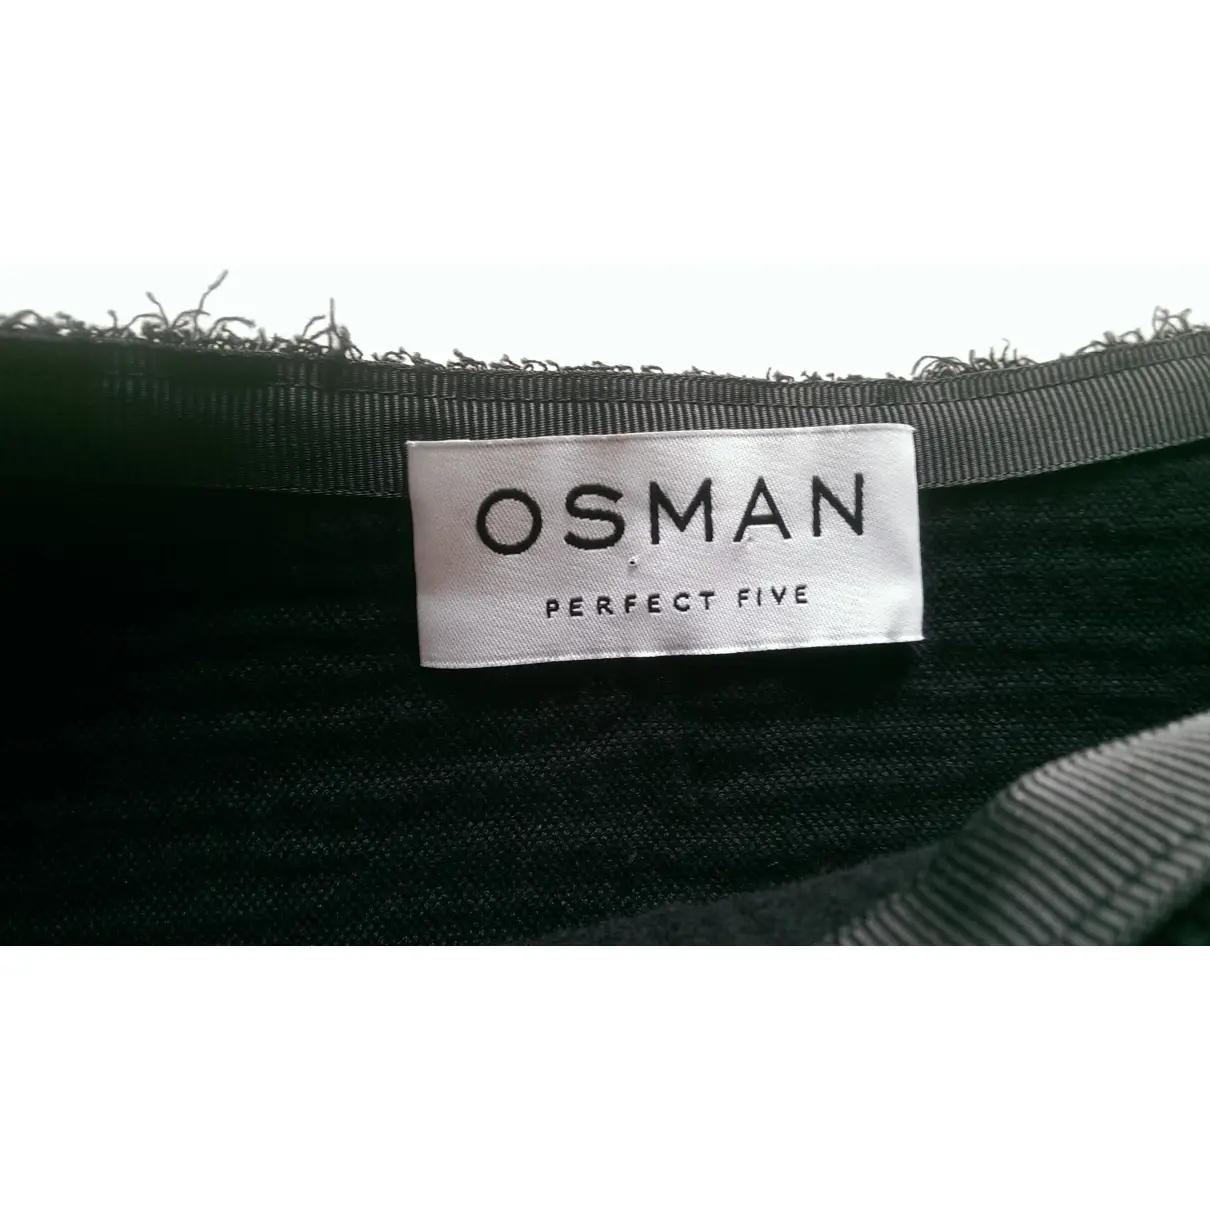 Osman Black Cotton Top for sale